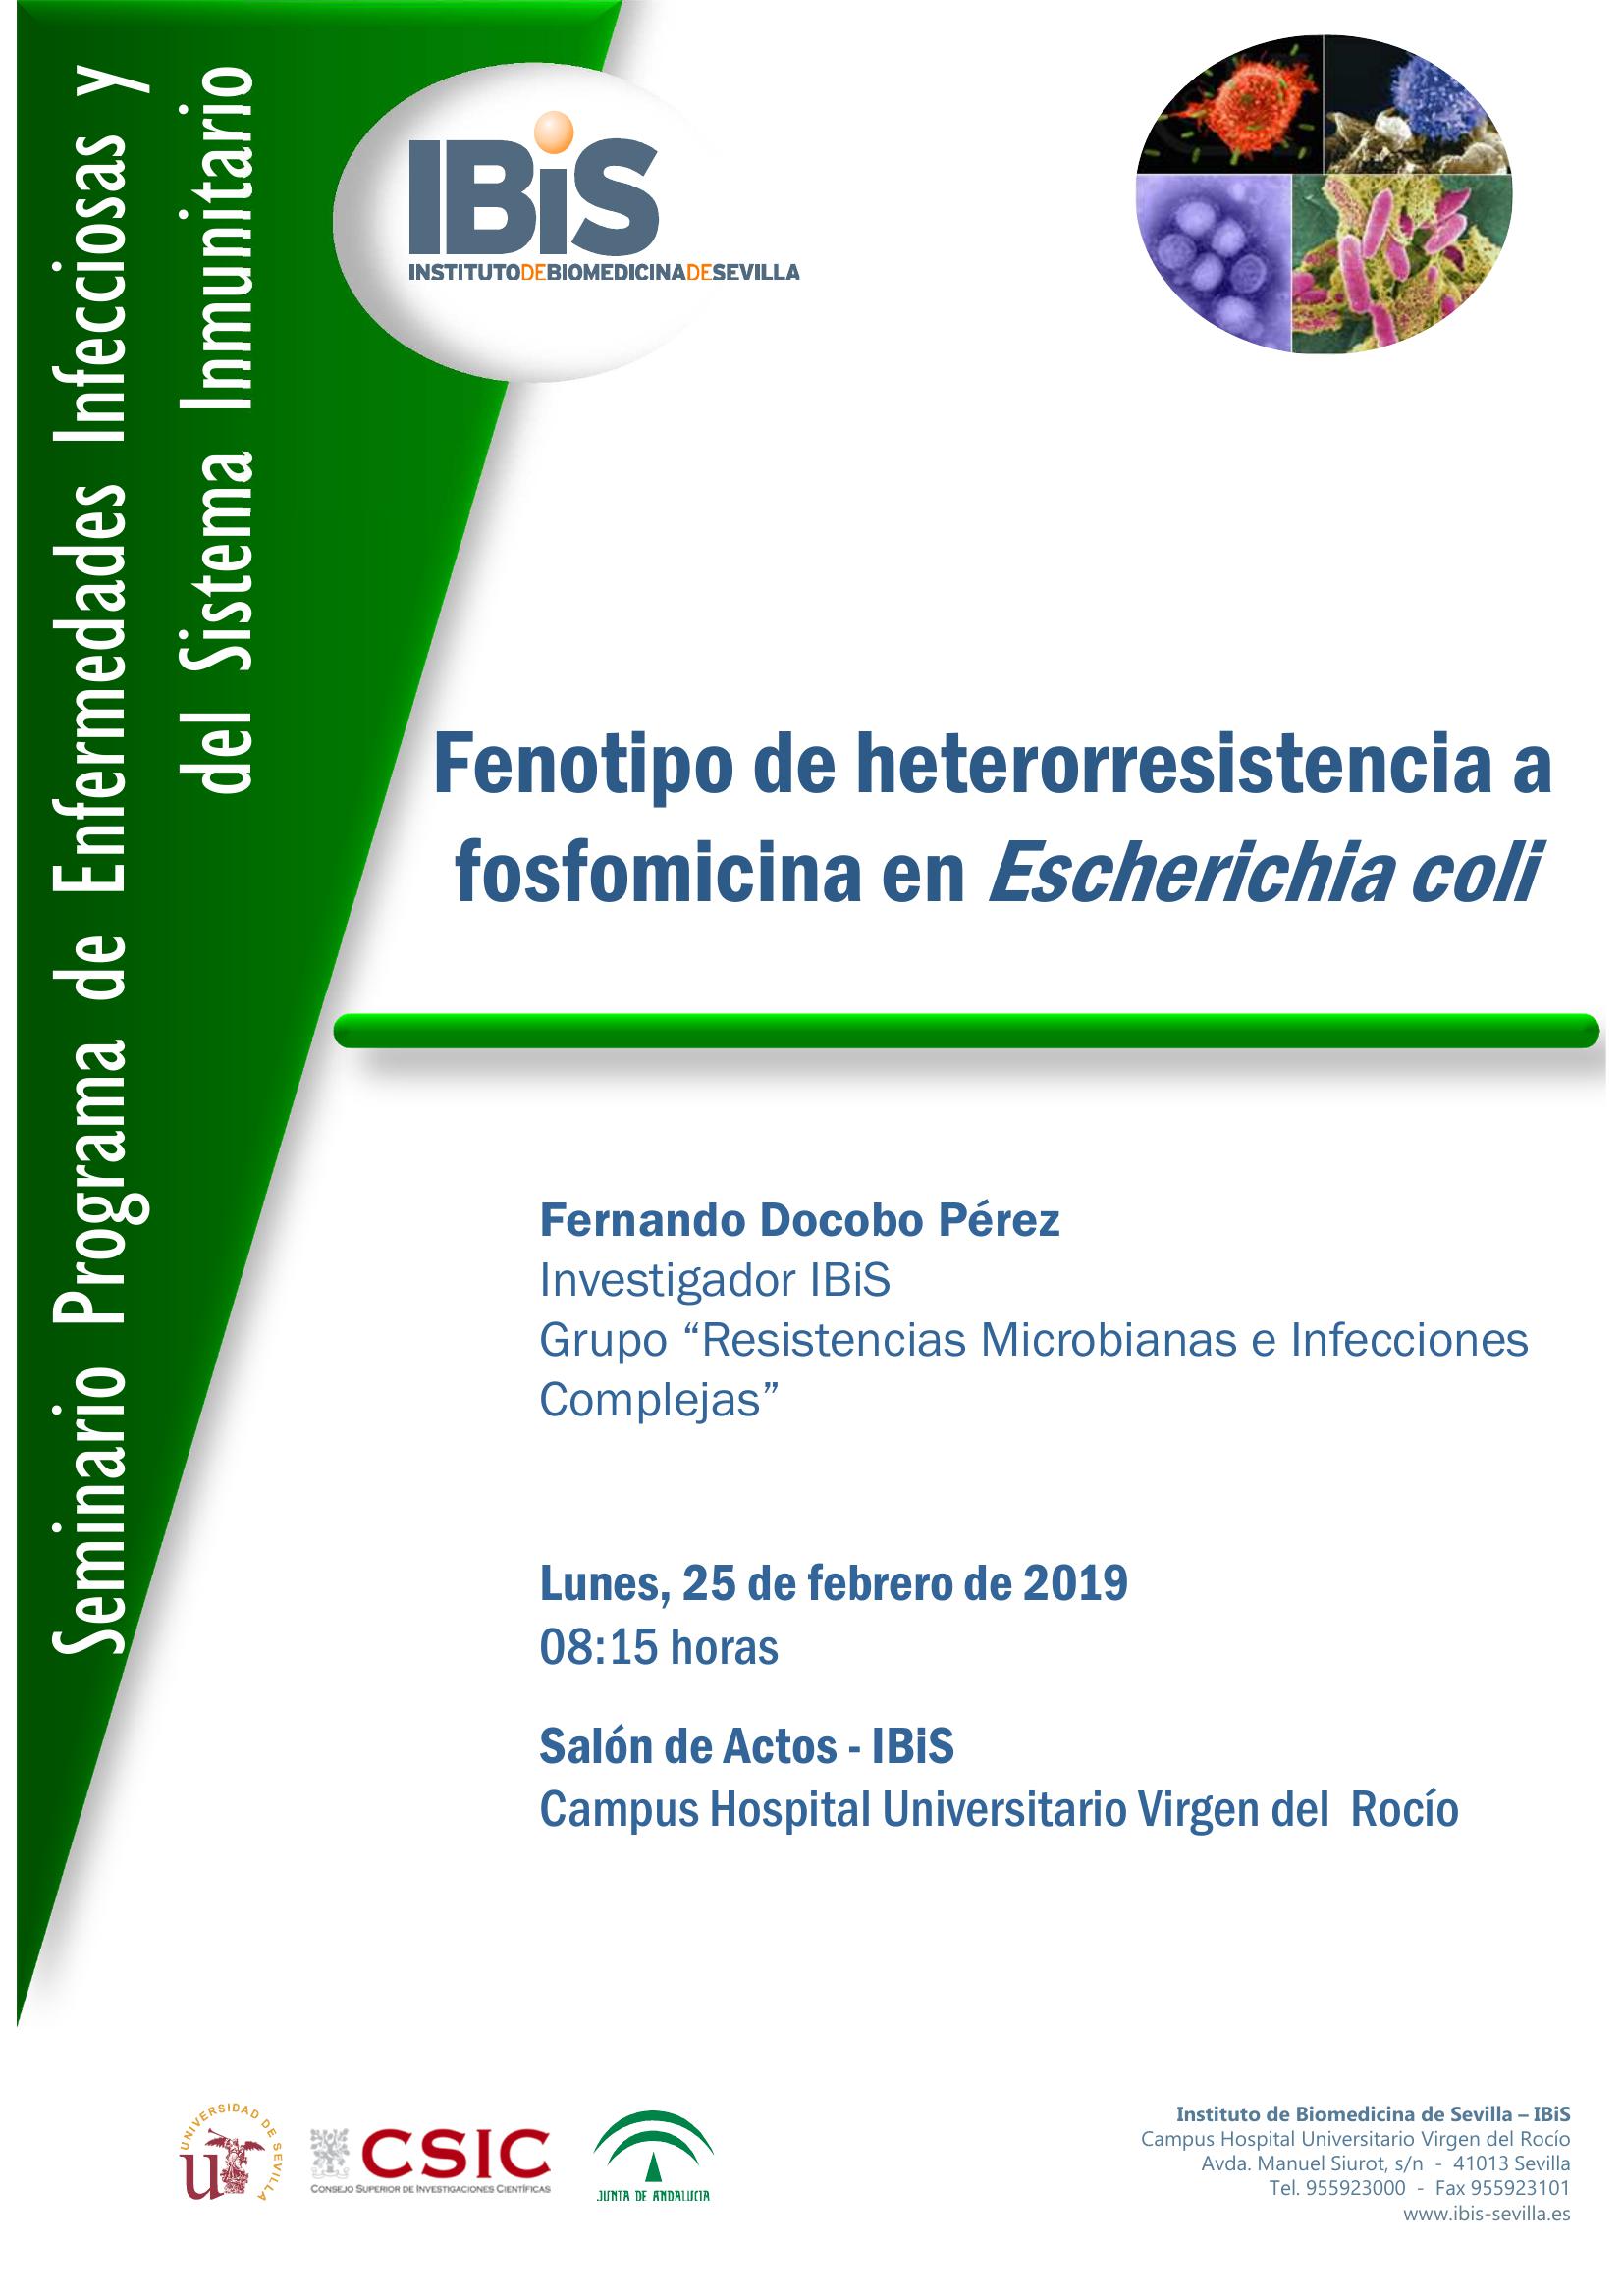 Poster: Fenotipo de heterorresistencia a fosfomicina en Escherichia coli